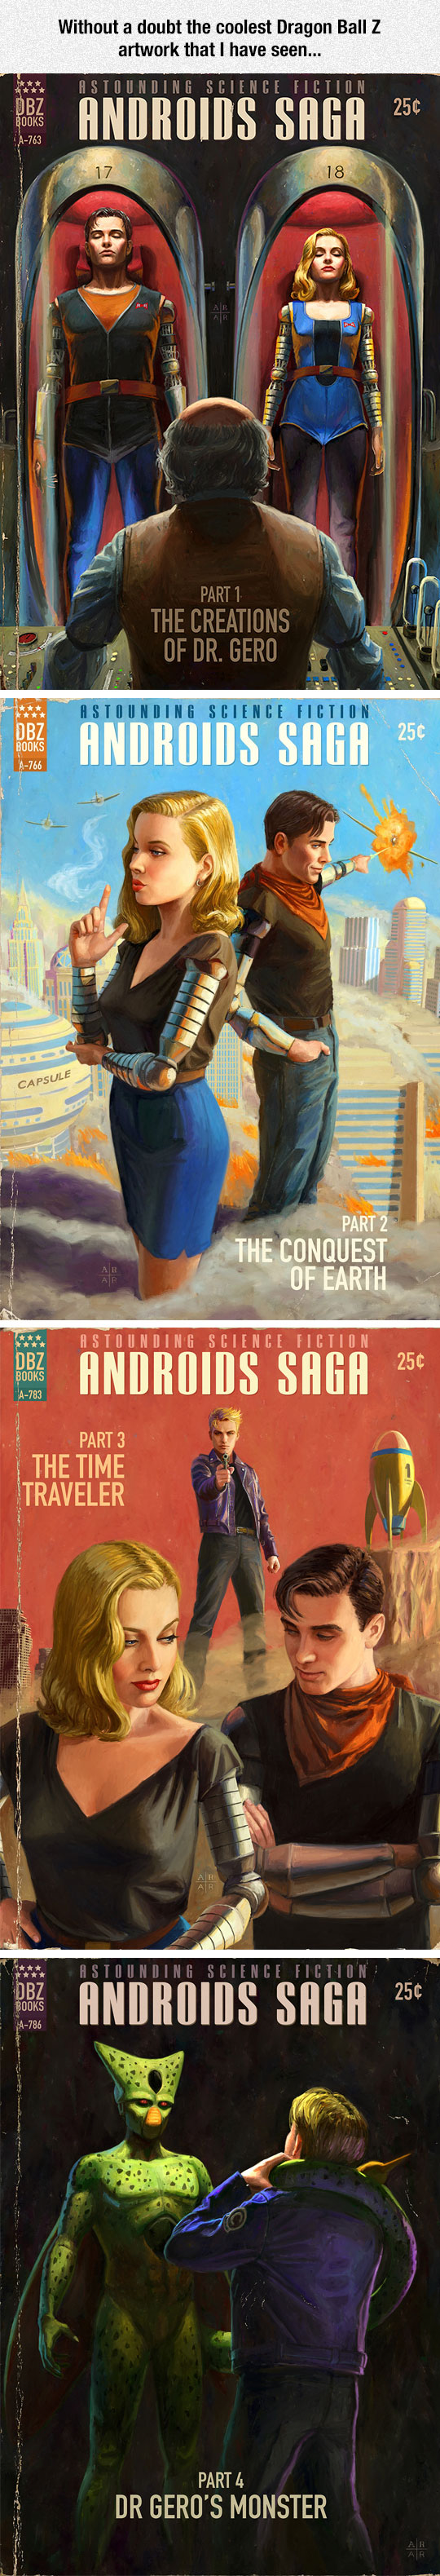 1-cool-dragon-ball-android-vintage-comic